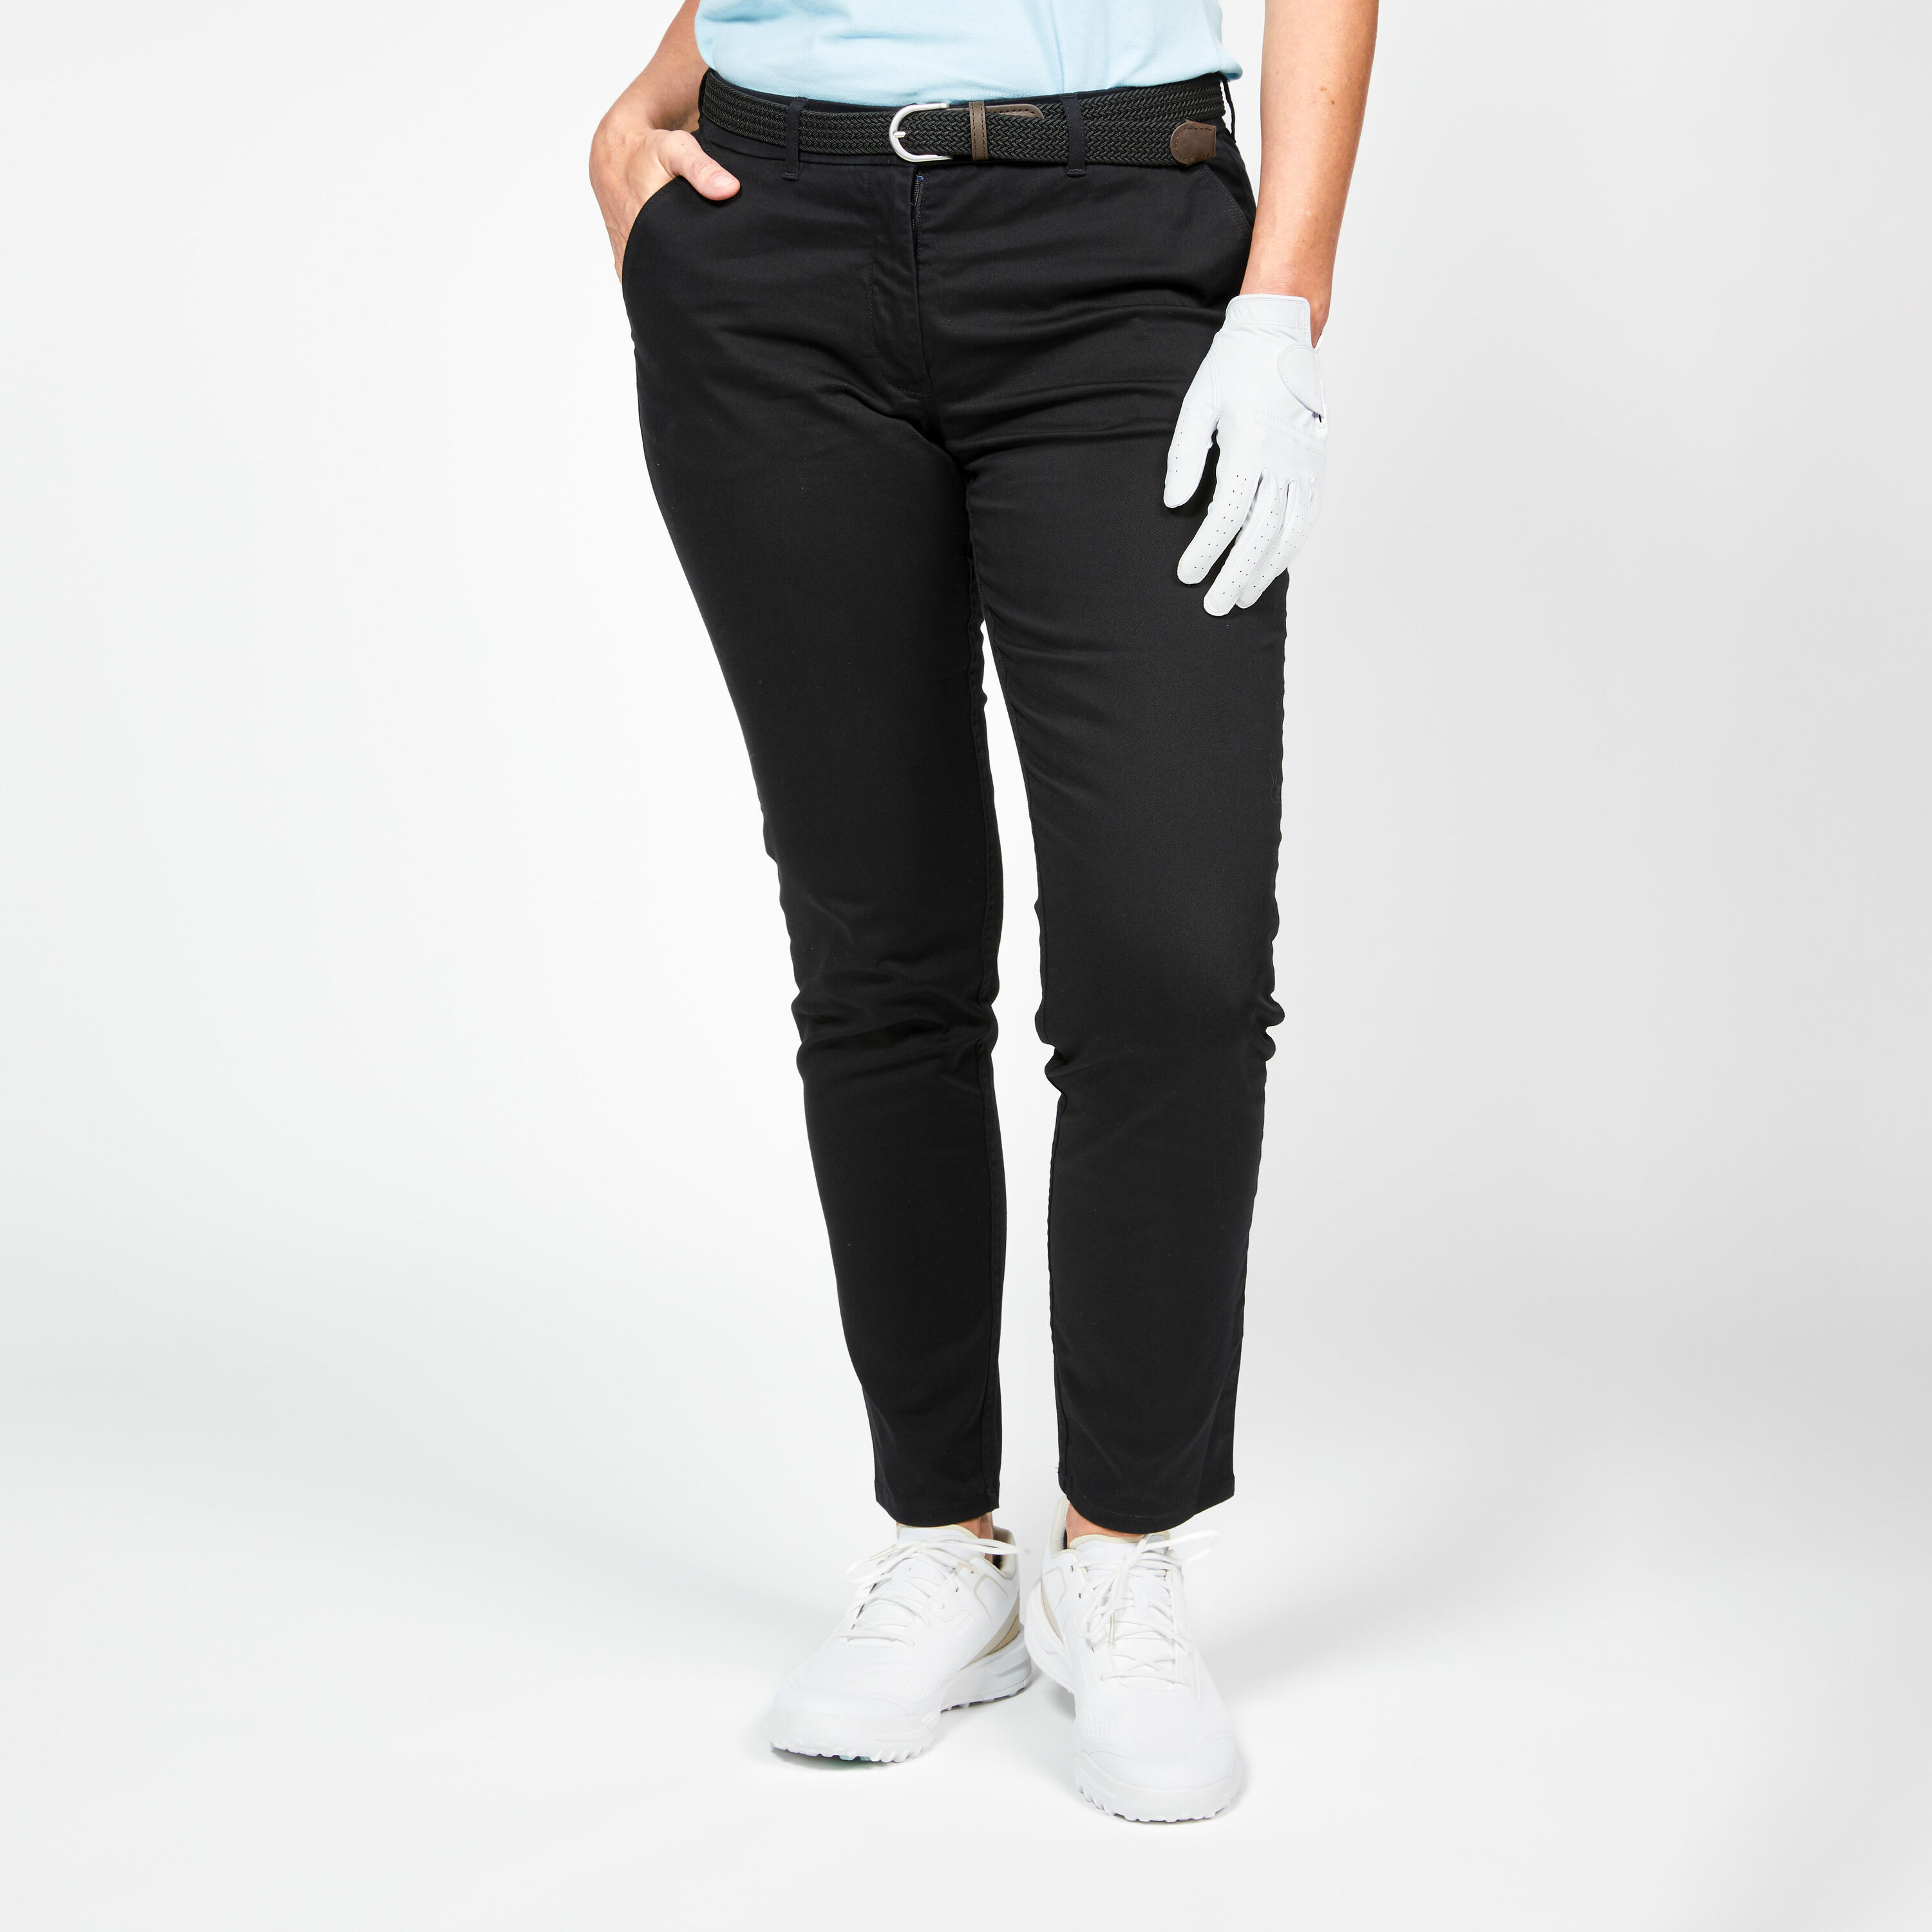 INESIS Women's Golf Chino Trousers - MW500 Black